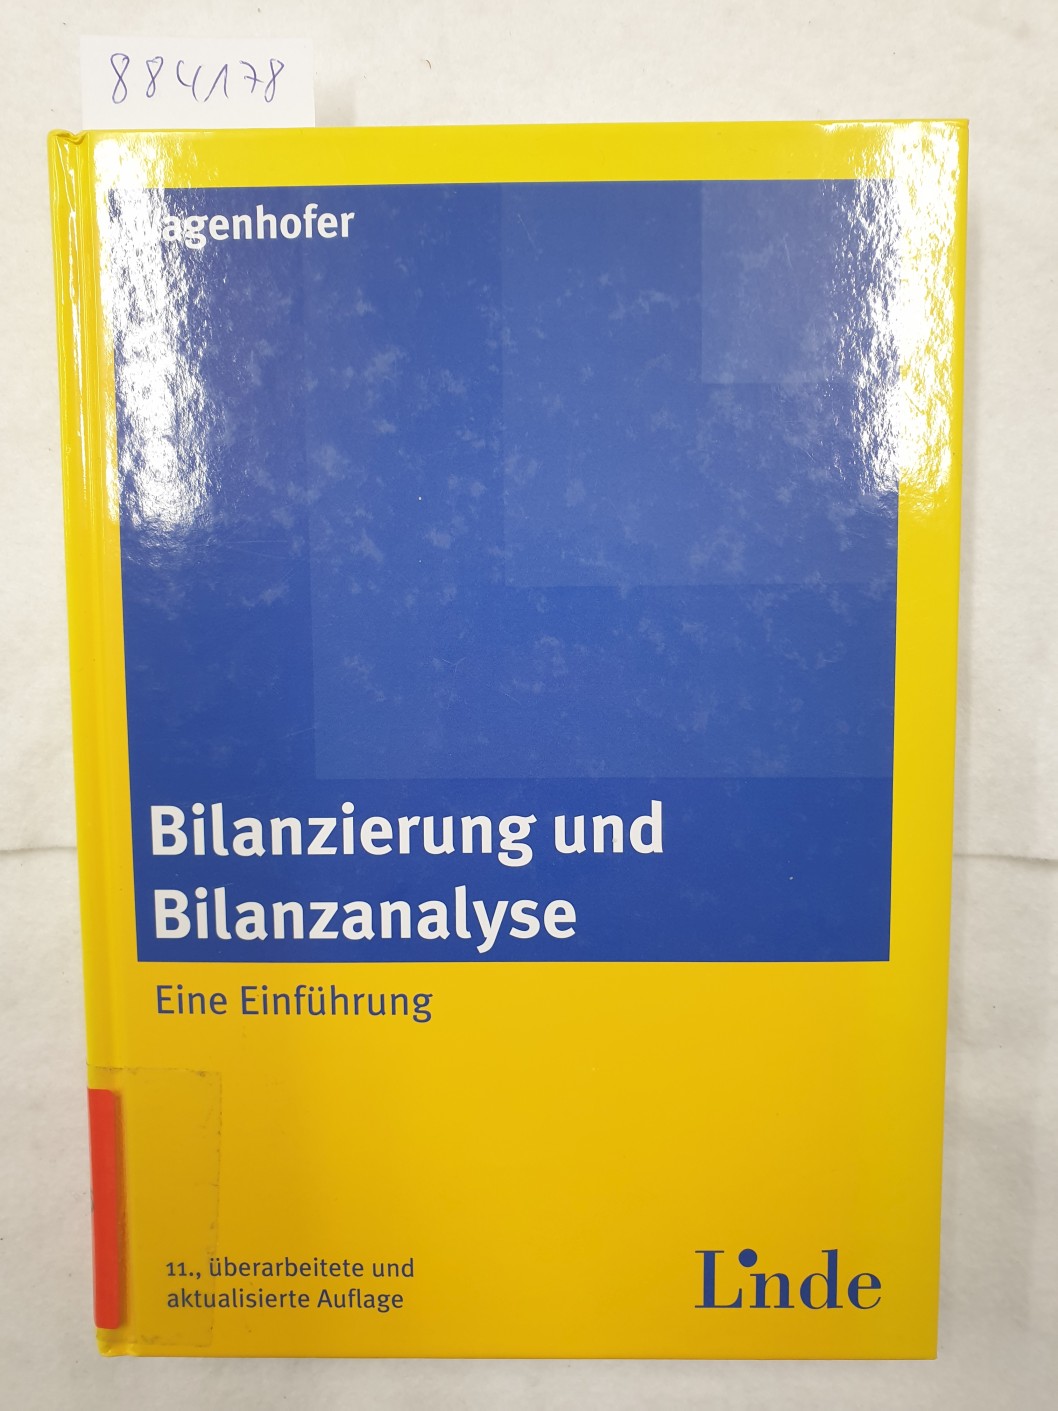 Bilanzierung und Bilanzanalyse - Eine Einführung (Linde Lehrbuch) : - Wagenhofer, Alfred